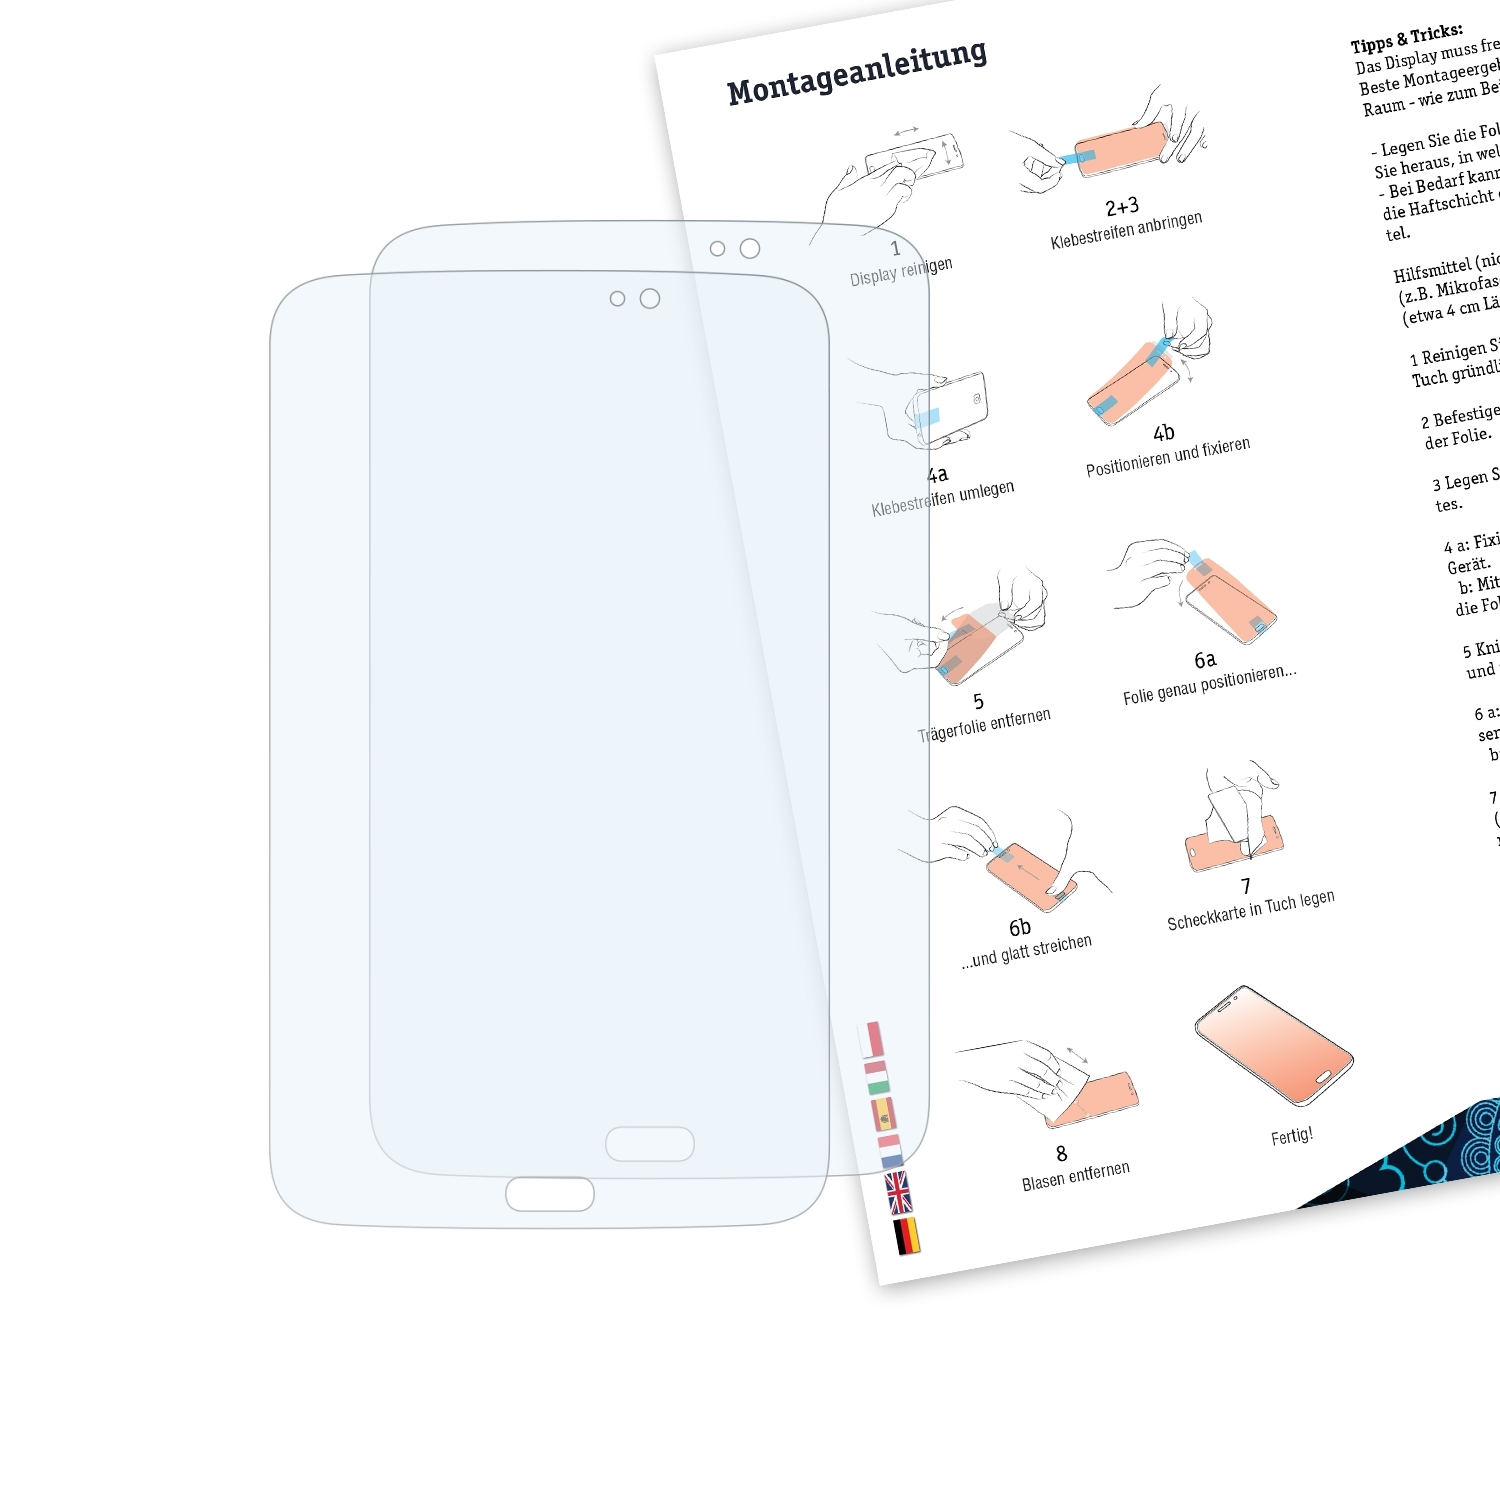 BRUNI 2x Galaxy Tab (SM-T2105)) Schutzfolie(für 3 Samsung Kids Basics-Clear